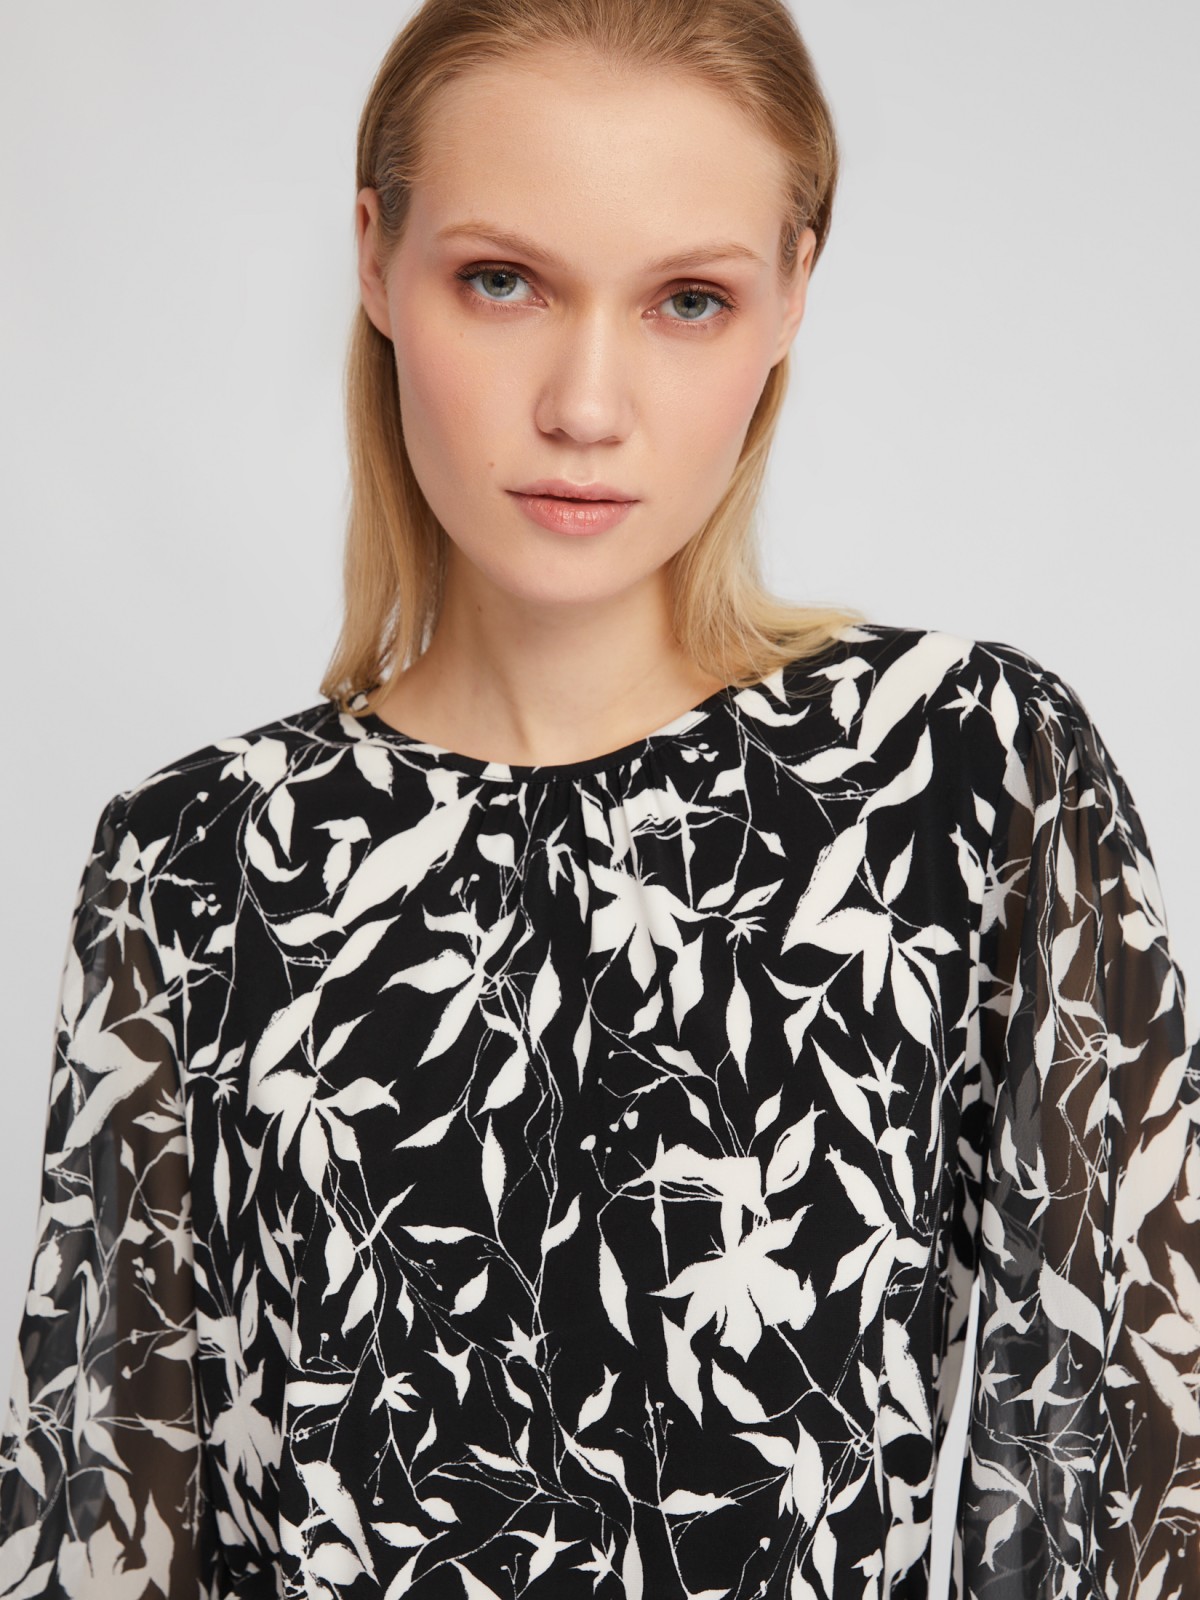 Трикотажная блузка с цветочным принтом и акцентом на рукавах